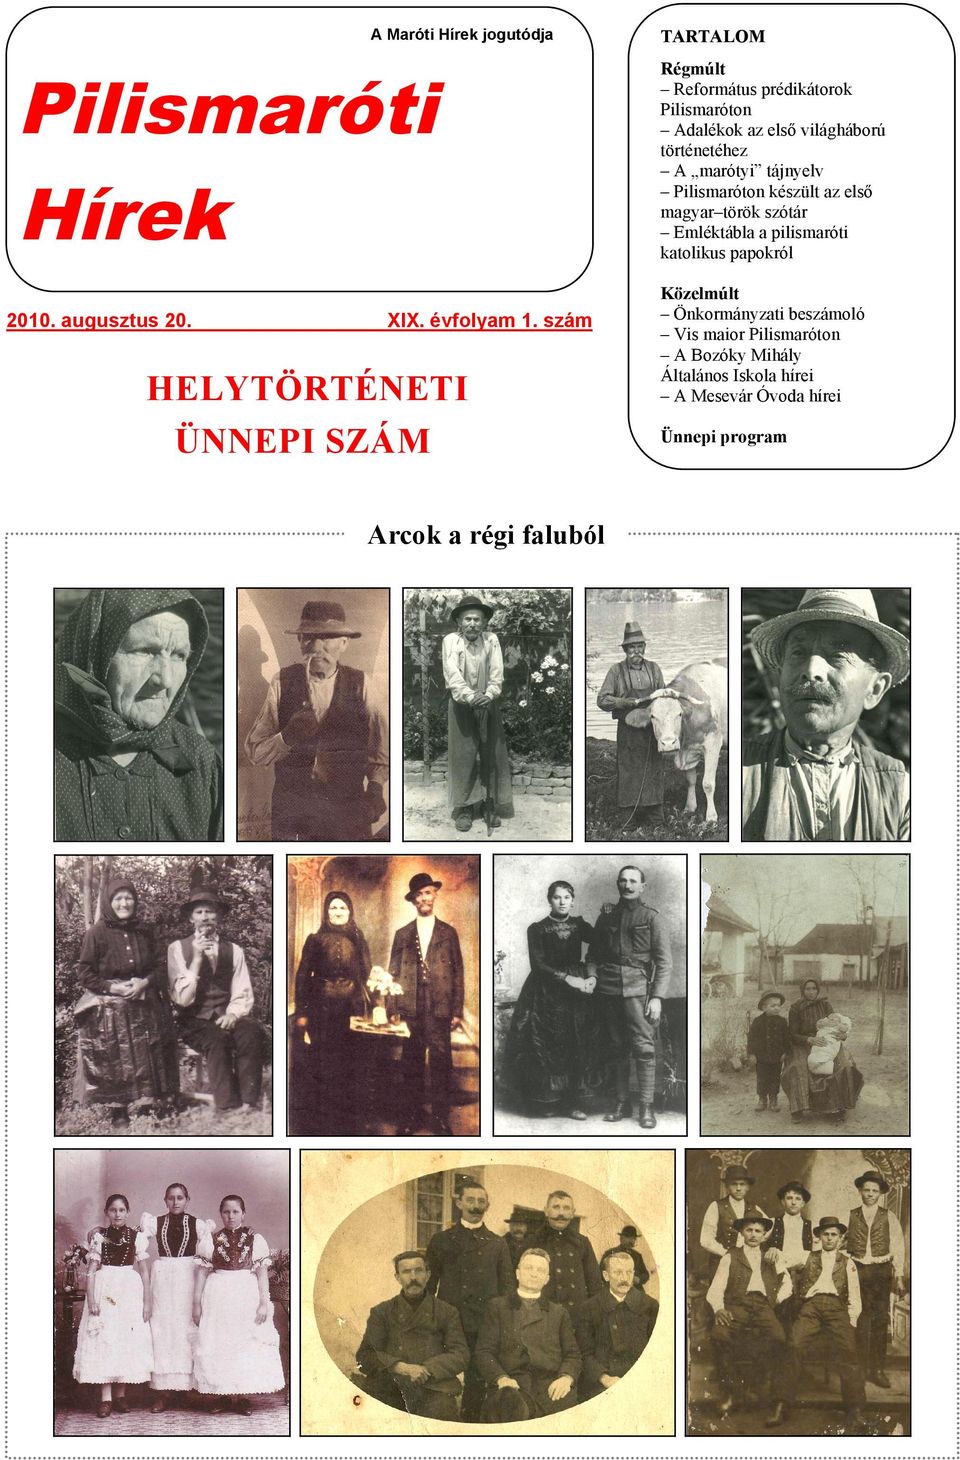 Pilismaróton Adalékok az első világháború történetéhez A marótyi tájnyelv Pilismaróton készült az első magyar török